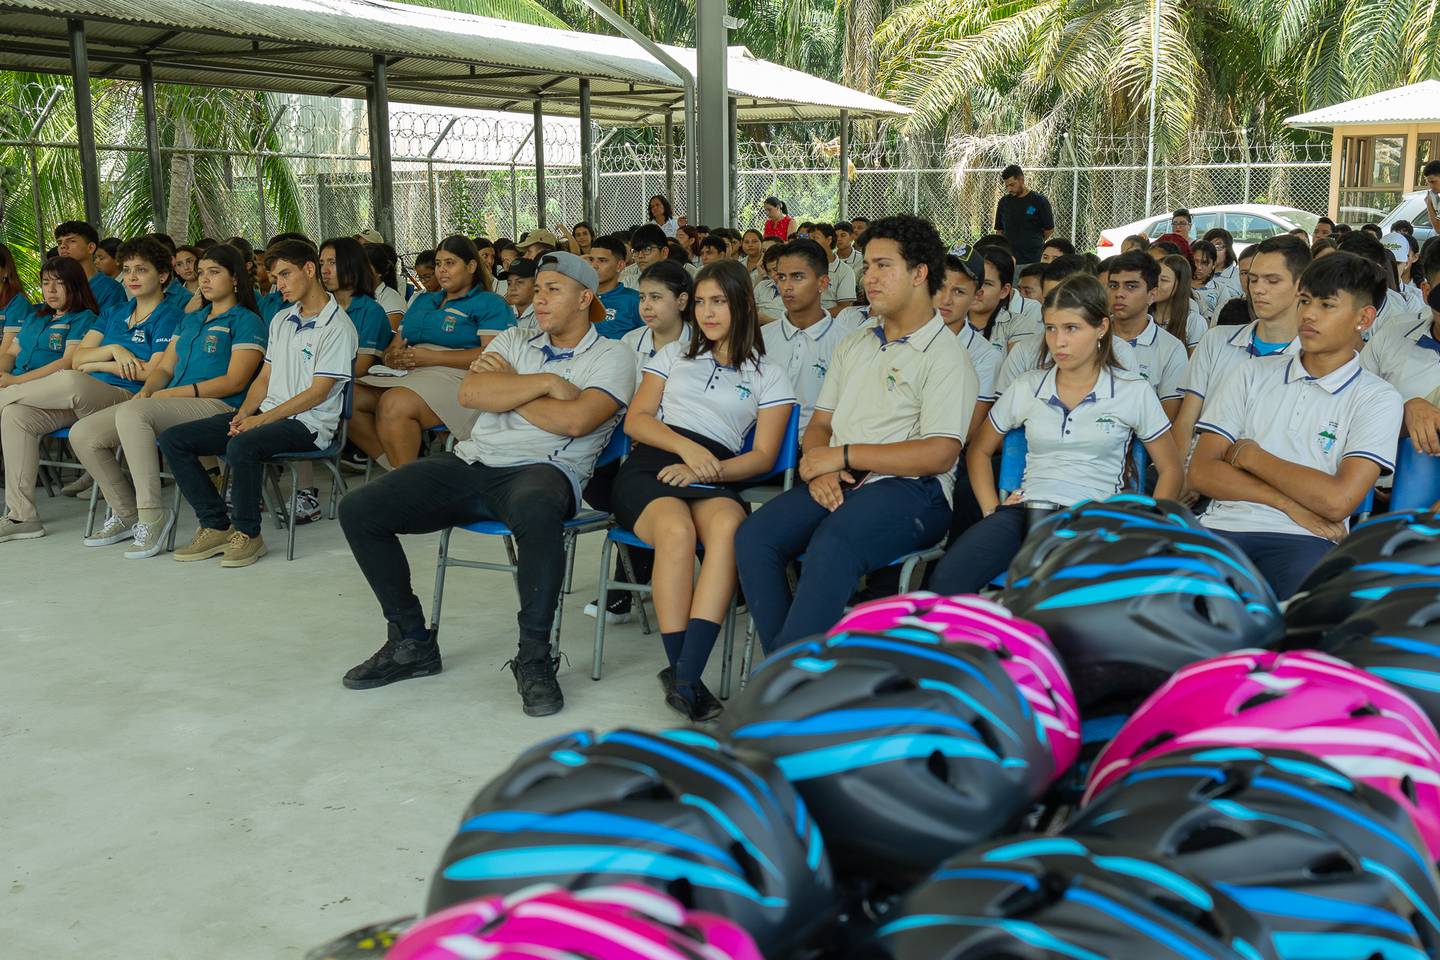 El Automóvil Club de Costa Rica (ACCR) hizo una donación de 50 cascos y rodilleras buscando bajar las consecuencias si sufren un accidente en la calle y para motivarlos a que se transporten a sus aulas en medios de transportes que no contaminan